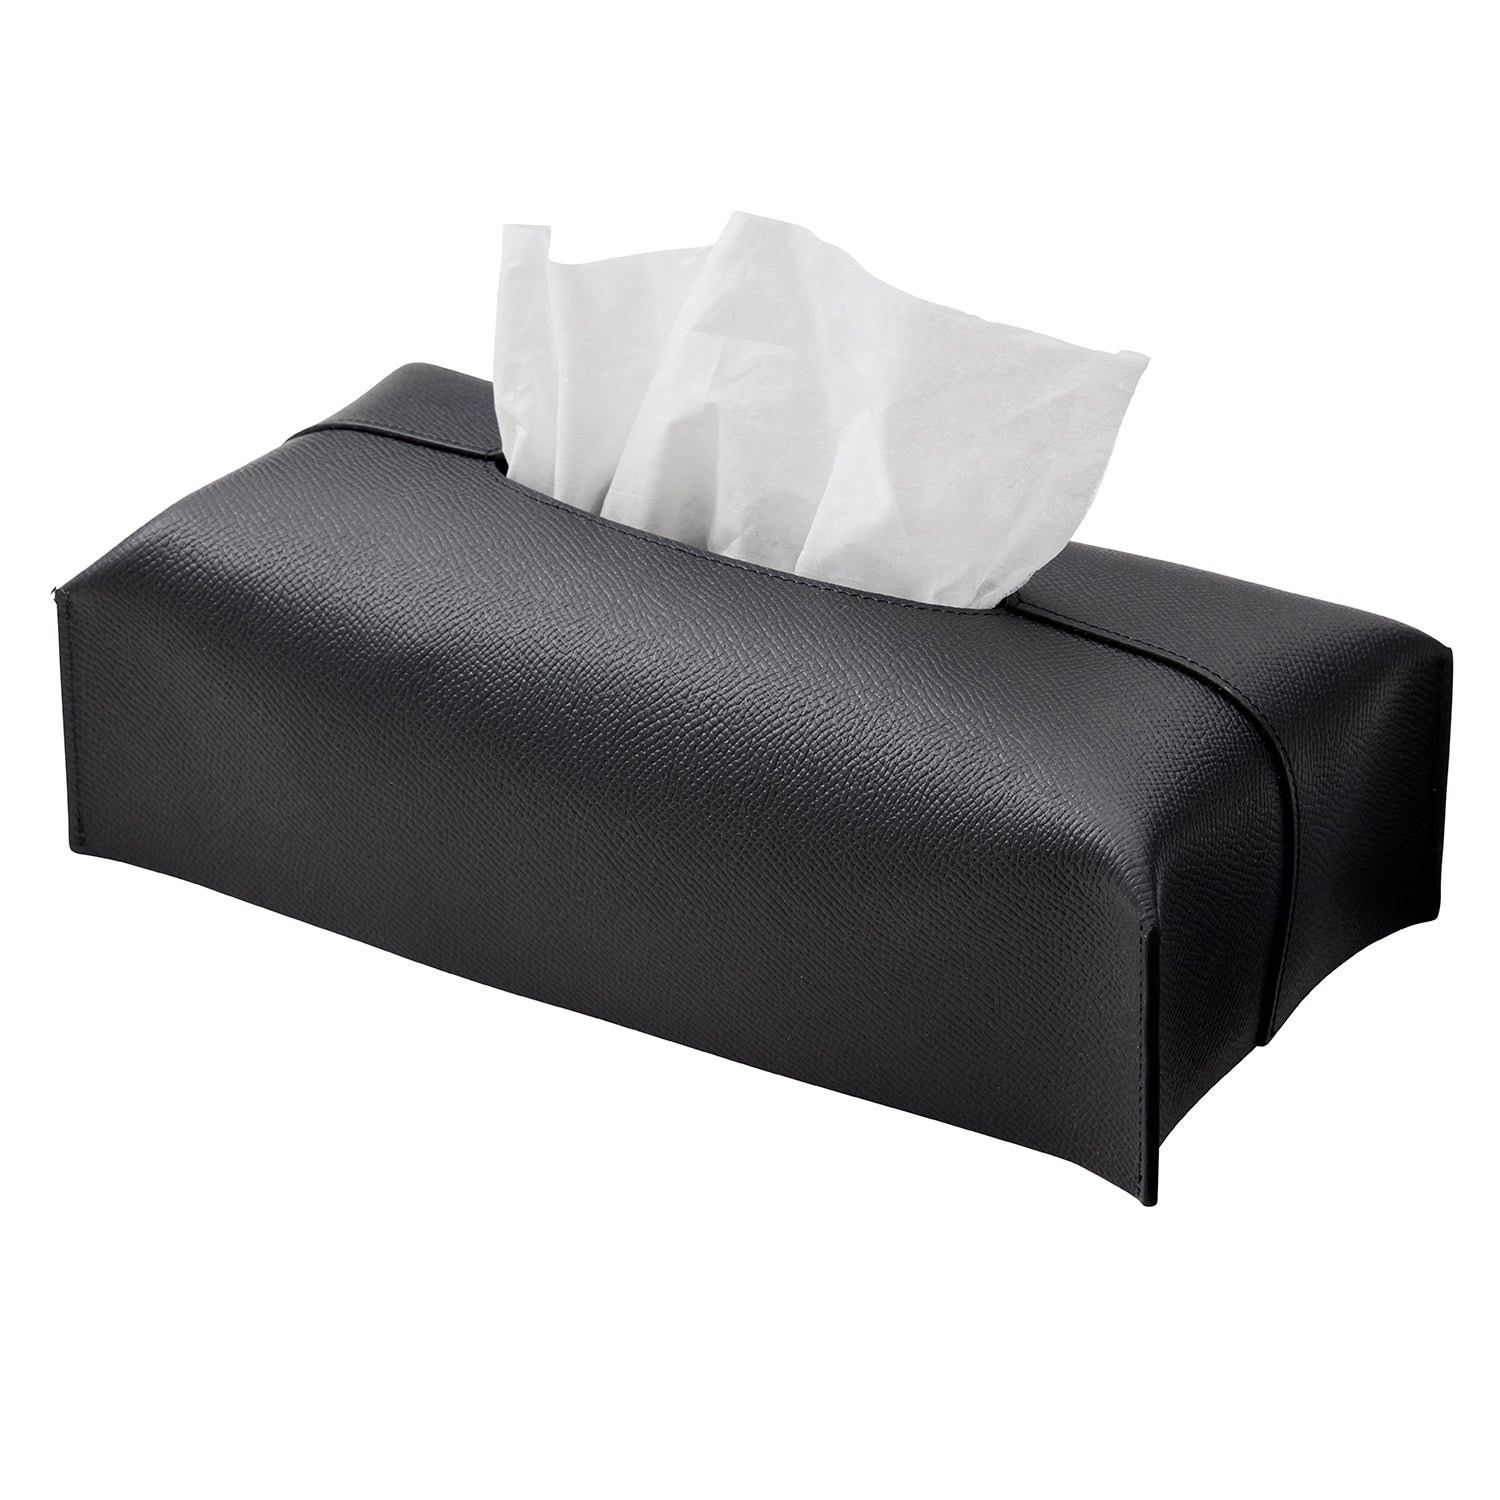 Tissue box cover (Regular Noblesse)